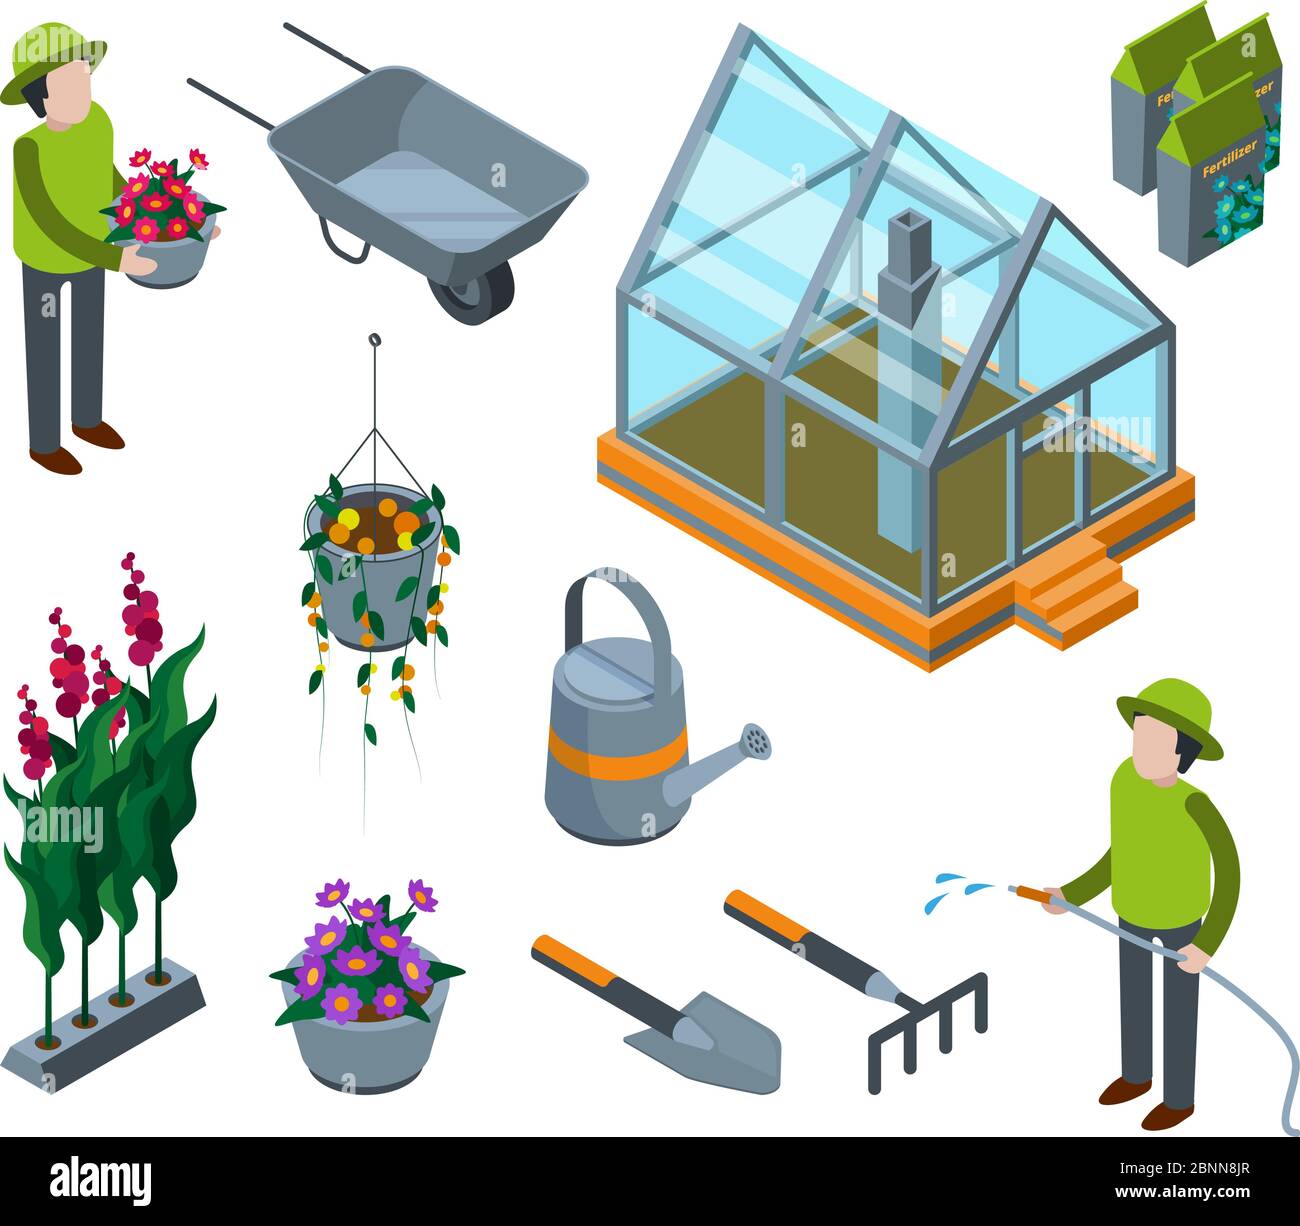 Gewächshausblumen. Landwirtschaftliche Konzept 3d Glashaus mit Pflanzen Gemüse Obst Bäume Kindergarten Vektor isometrische Illustrationen Stock Vektor